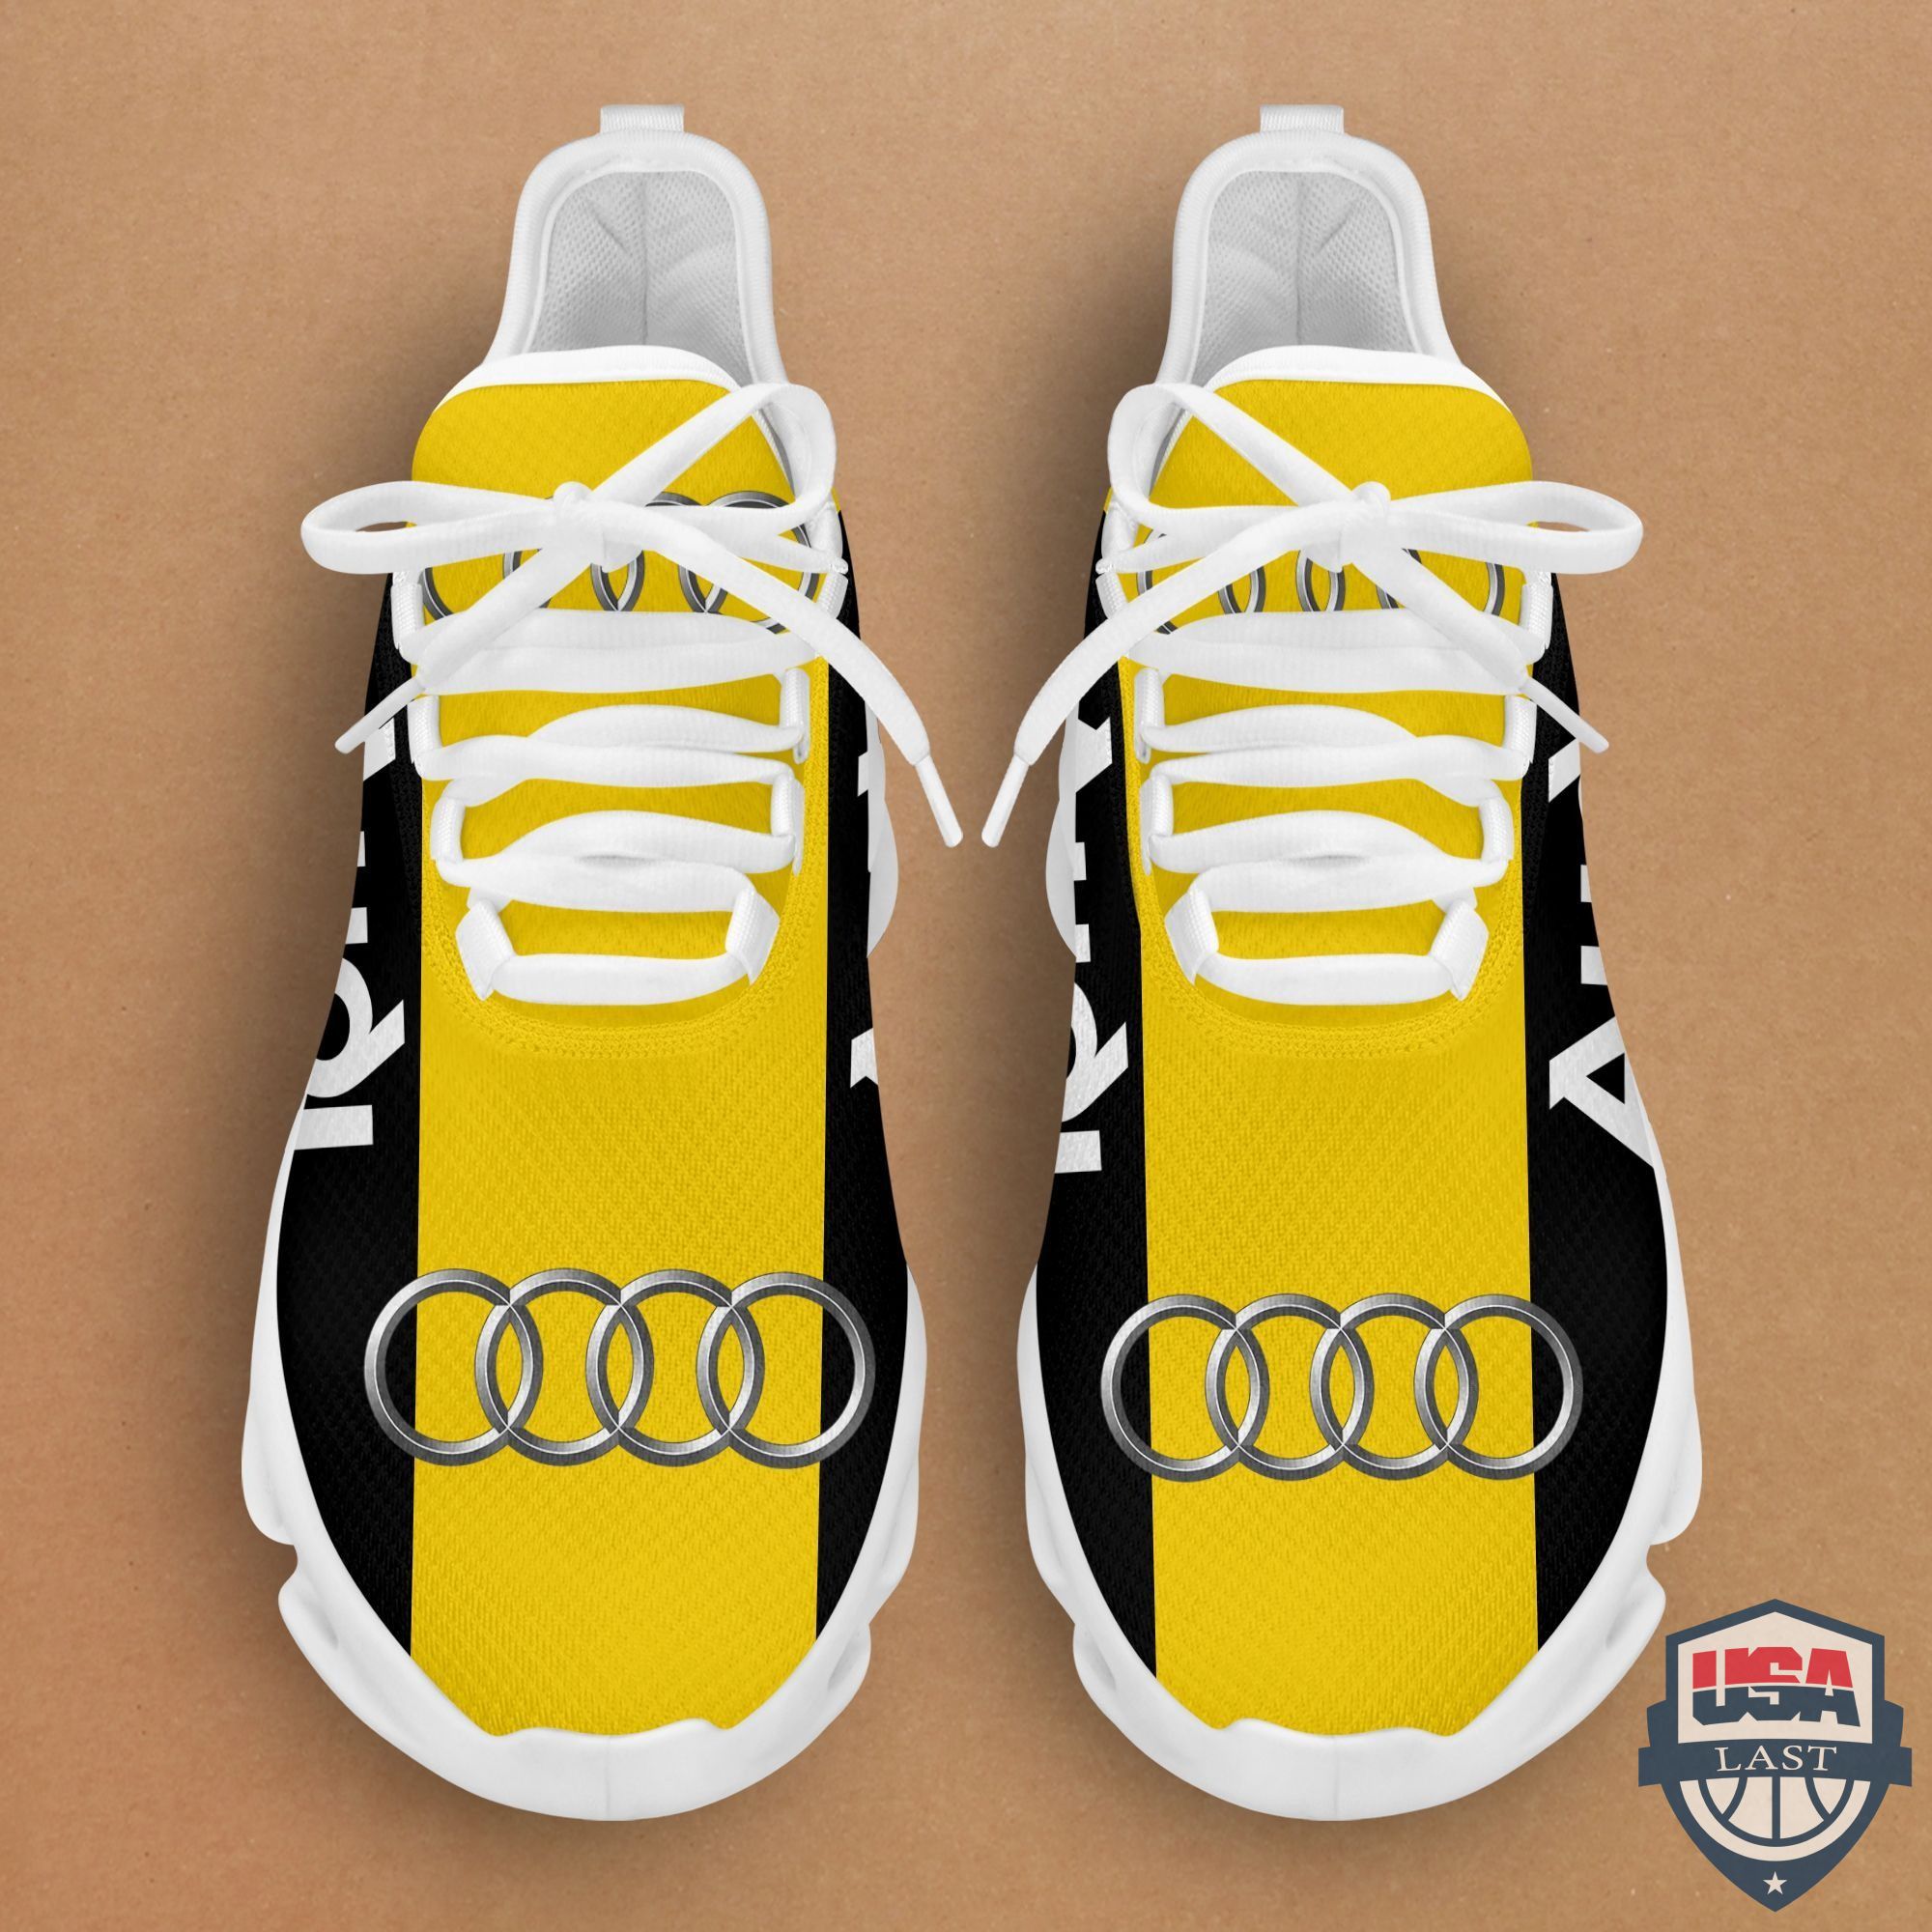 Audi Sneaker Max Soul Shoes Yellow Version